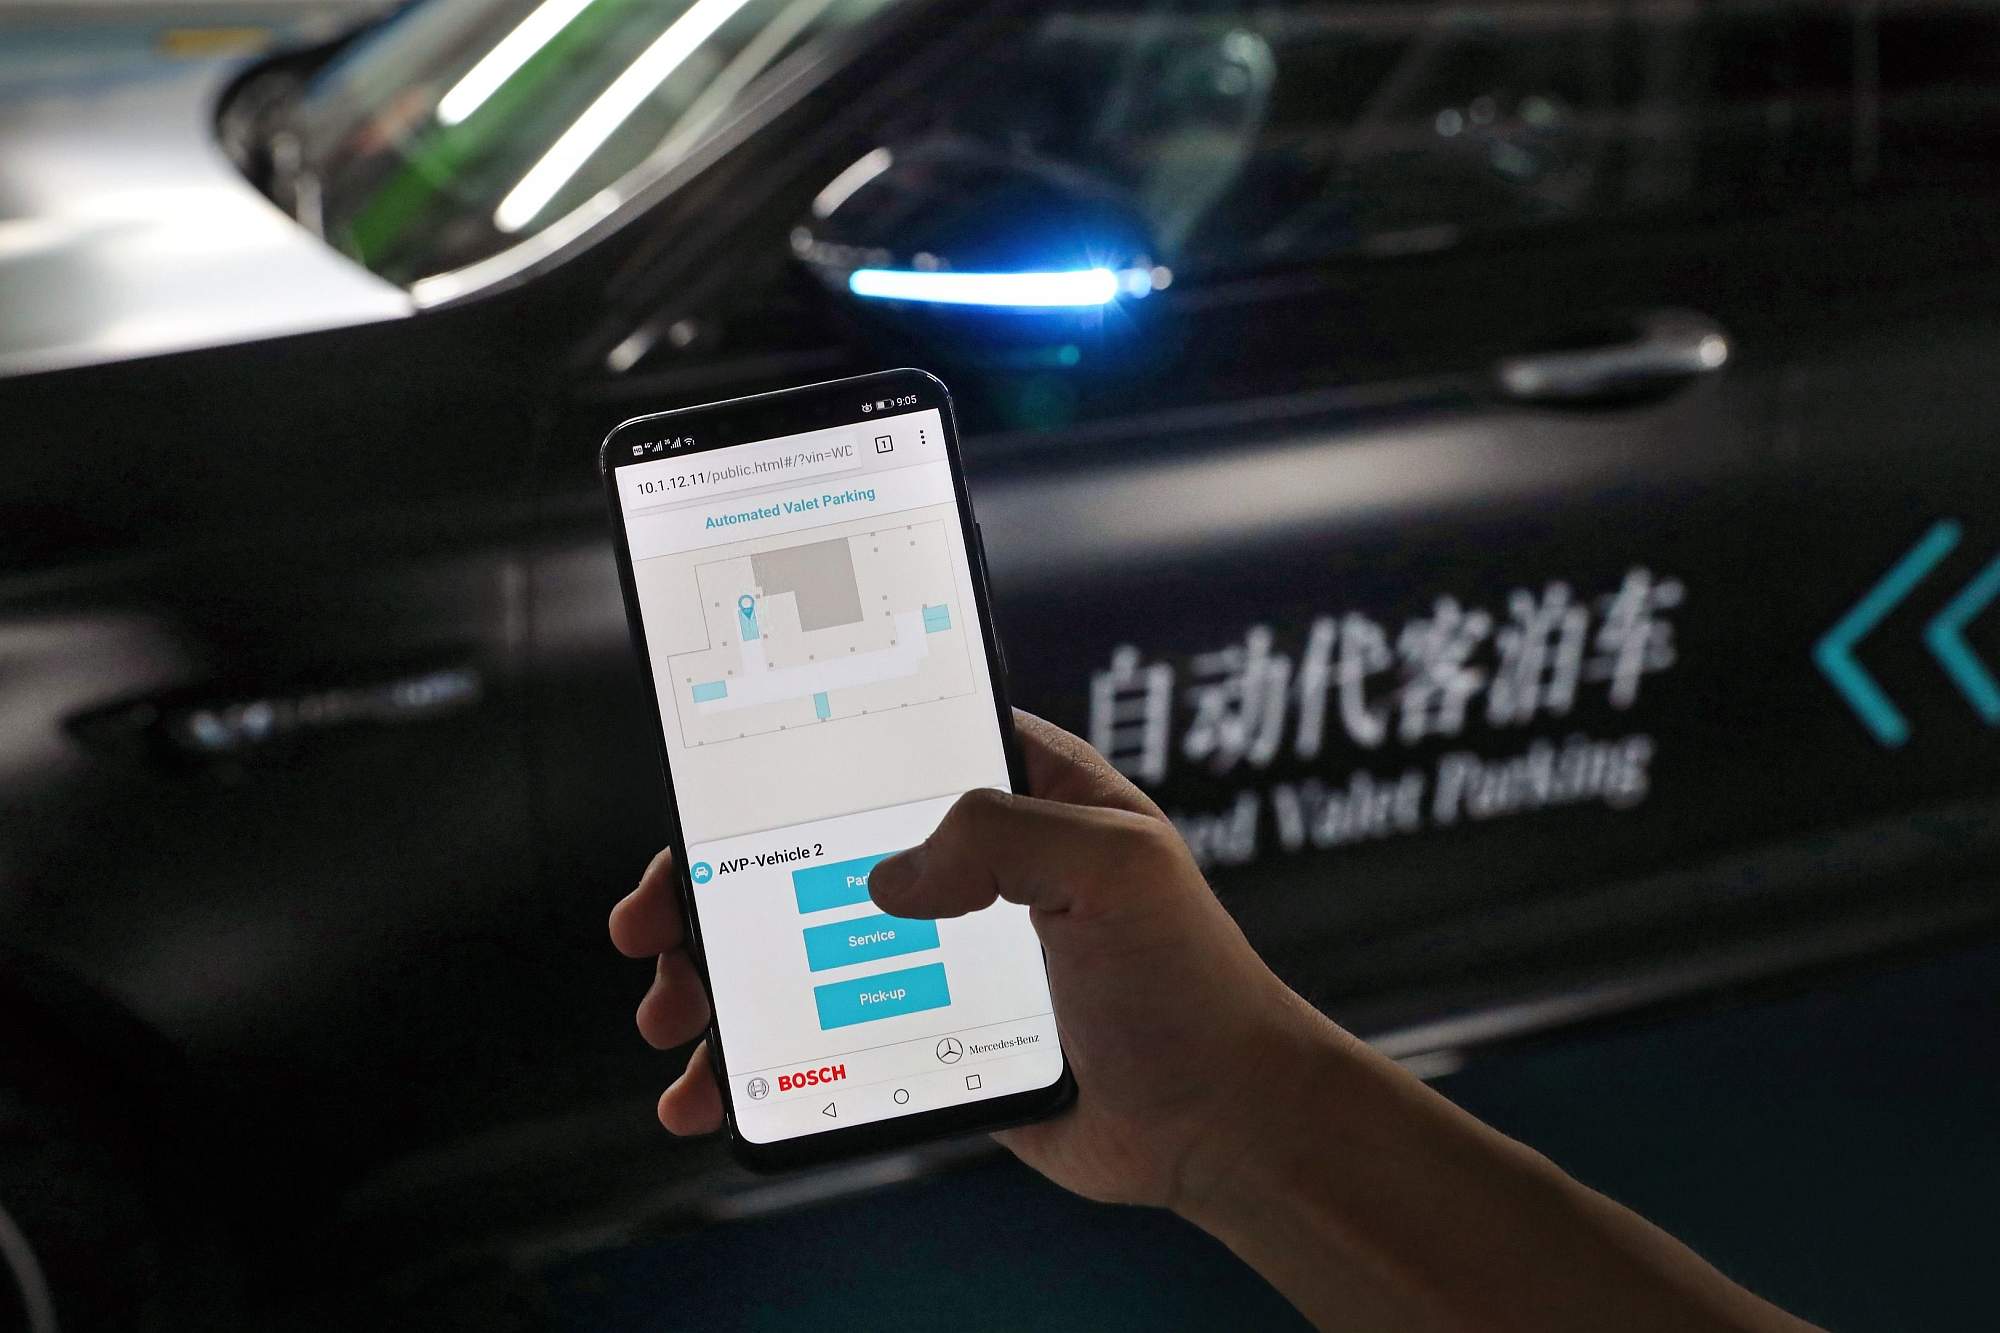 Daimler und Bosch präsentieren erstmalig fahrerloses Parken in China

Daimler and Bosch jointly premiere  Automated Valet Parking in China